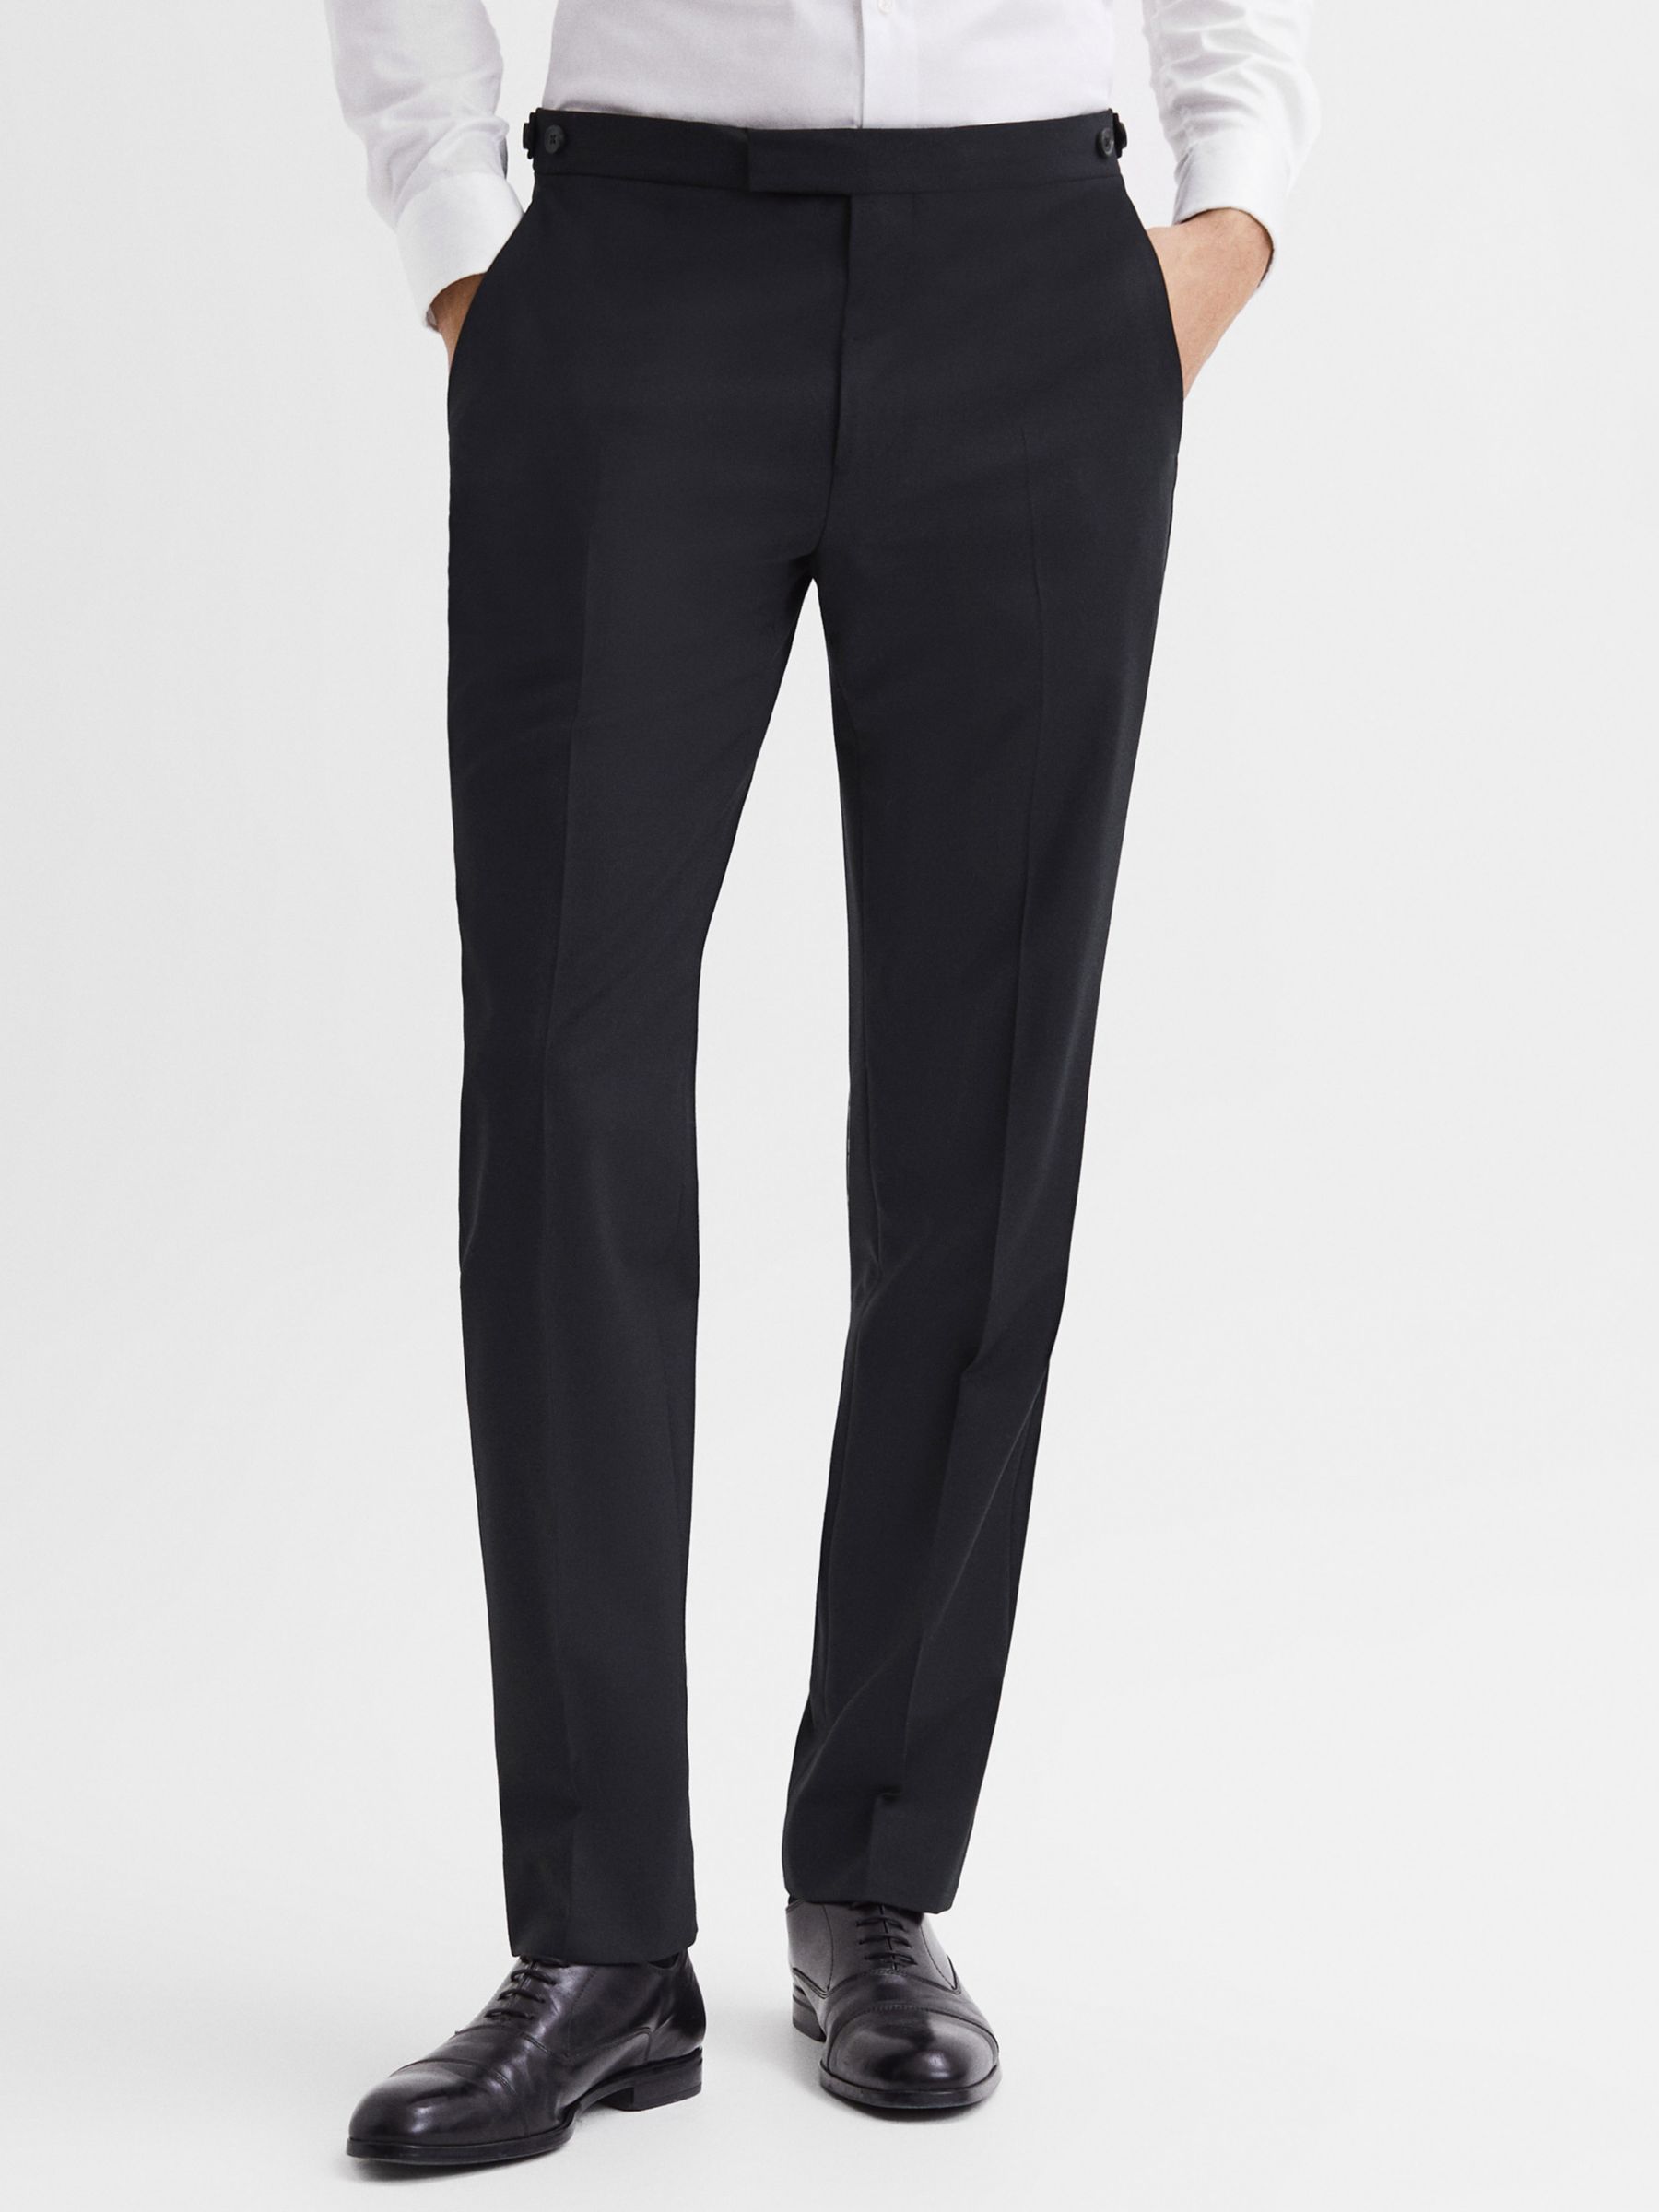 Men's Suit Trousers  John Lewis & Partners